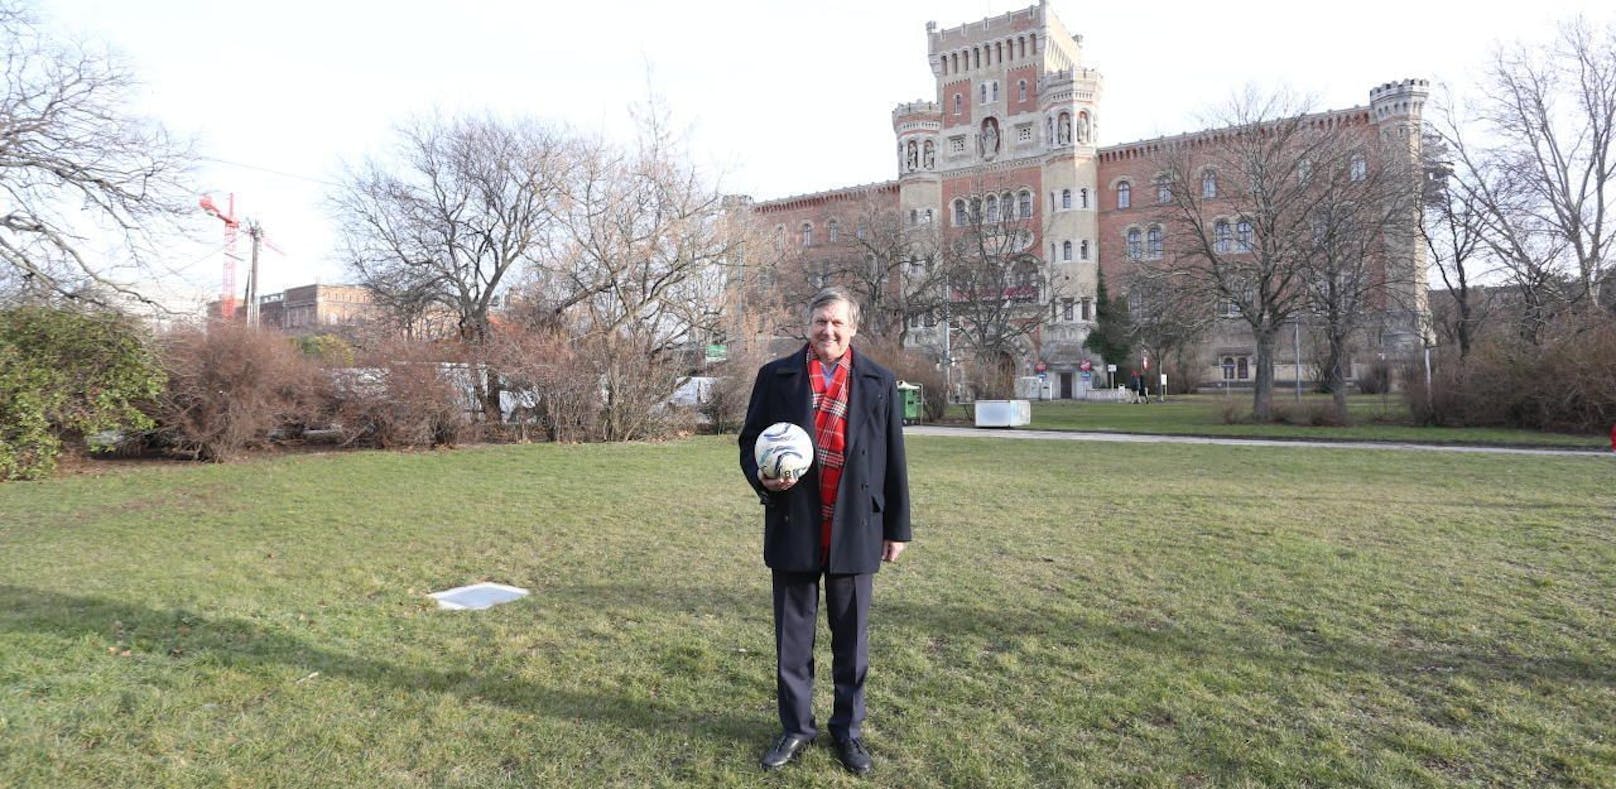 Bezirkschef Hohenberger zeigt den Standort des geplanten Frauenfußball-Platzes.